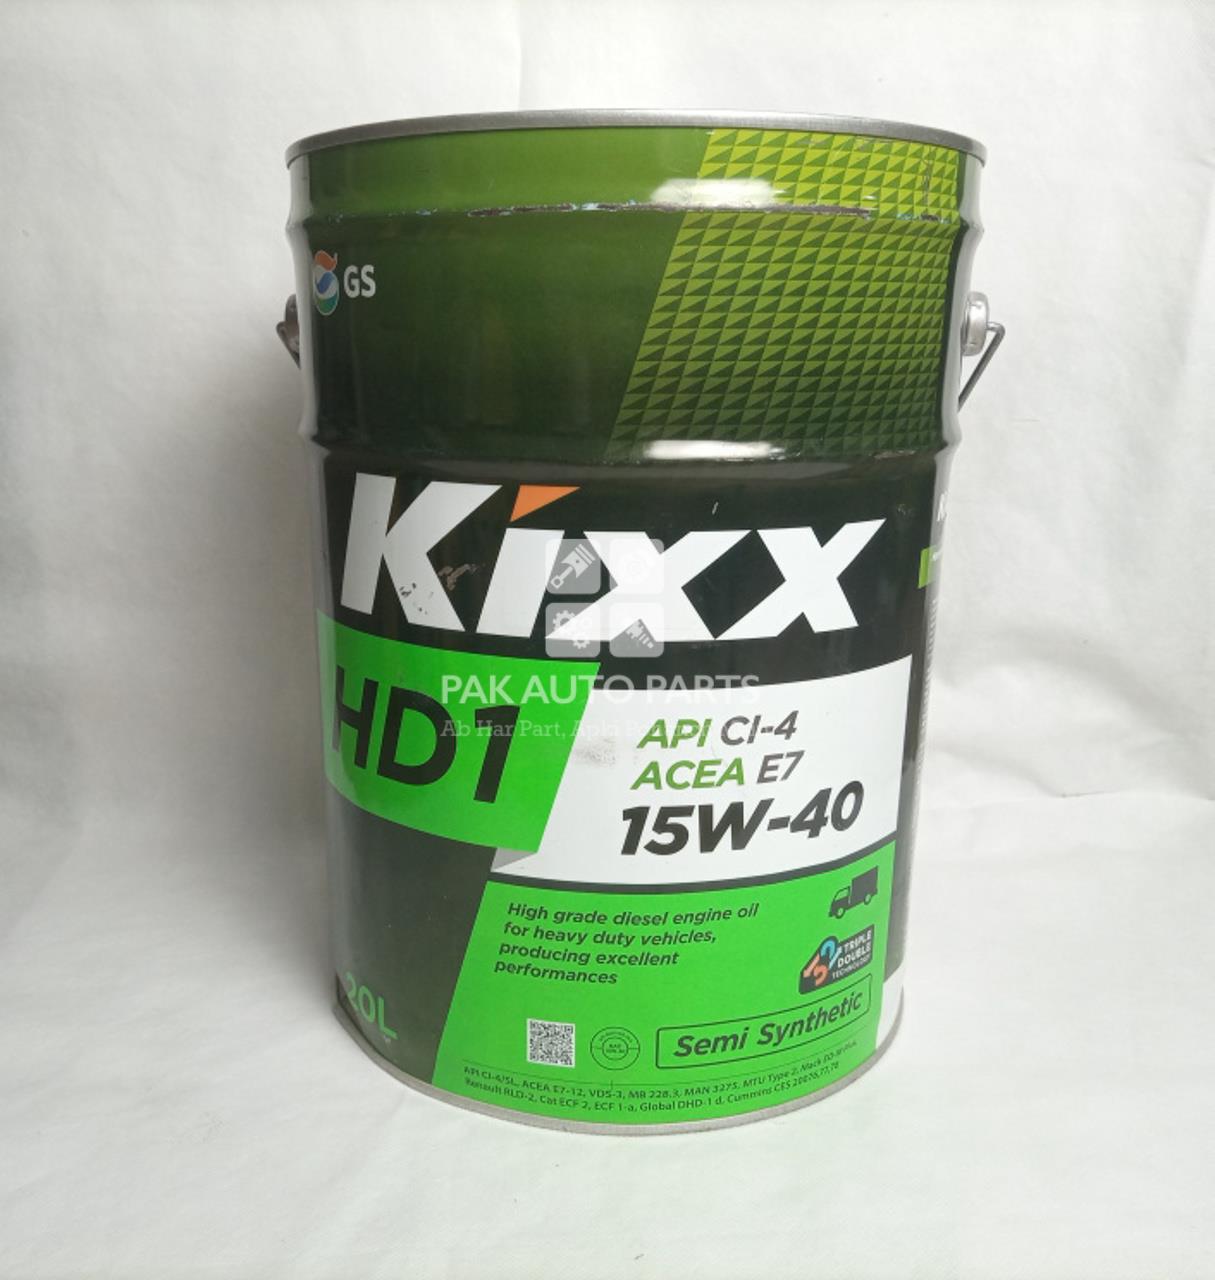 Масло Kixx HDL 15w-40 20l. Kixx Rd 68 20l. Масло Kixx hd1 ci-4 10w-40 (d1) Diesel 20л.